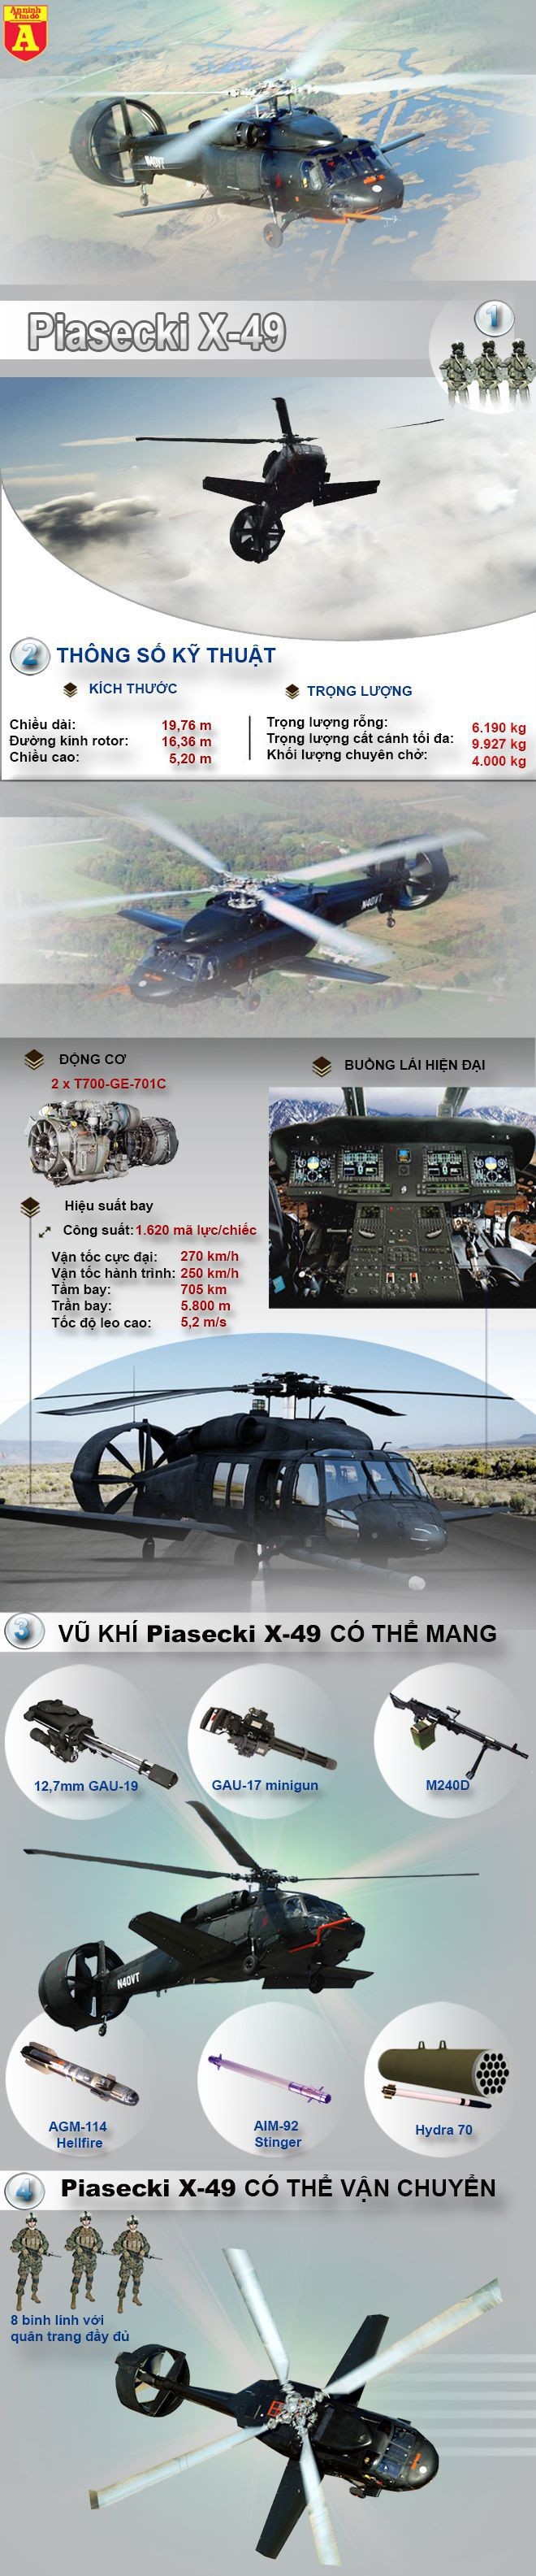 [Infographic] Siêu trực thăng tương lai của quân đội Mỹ ảnh 1